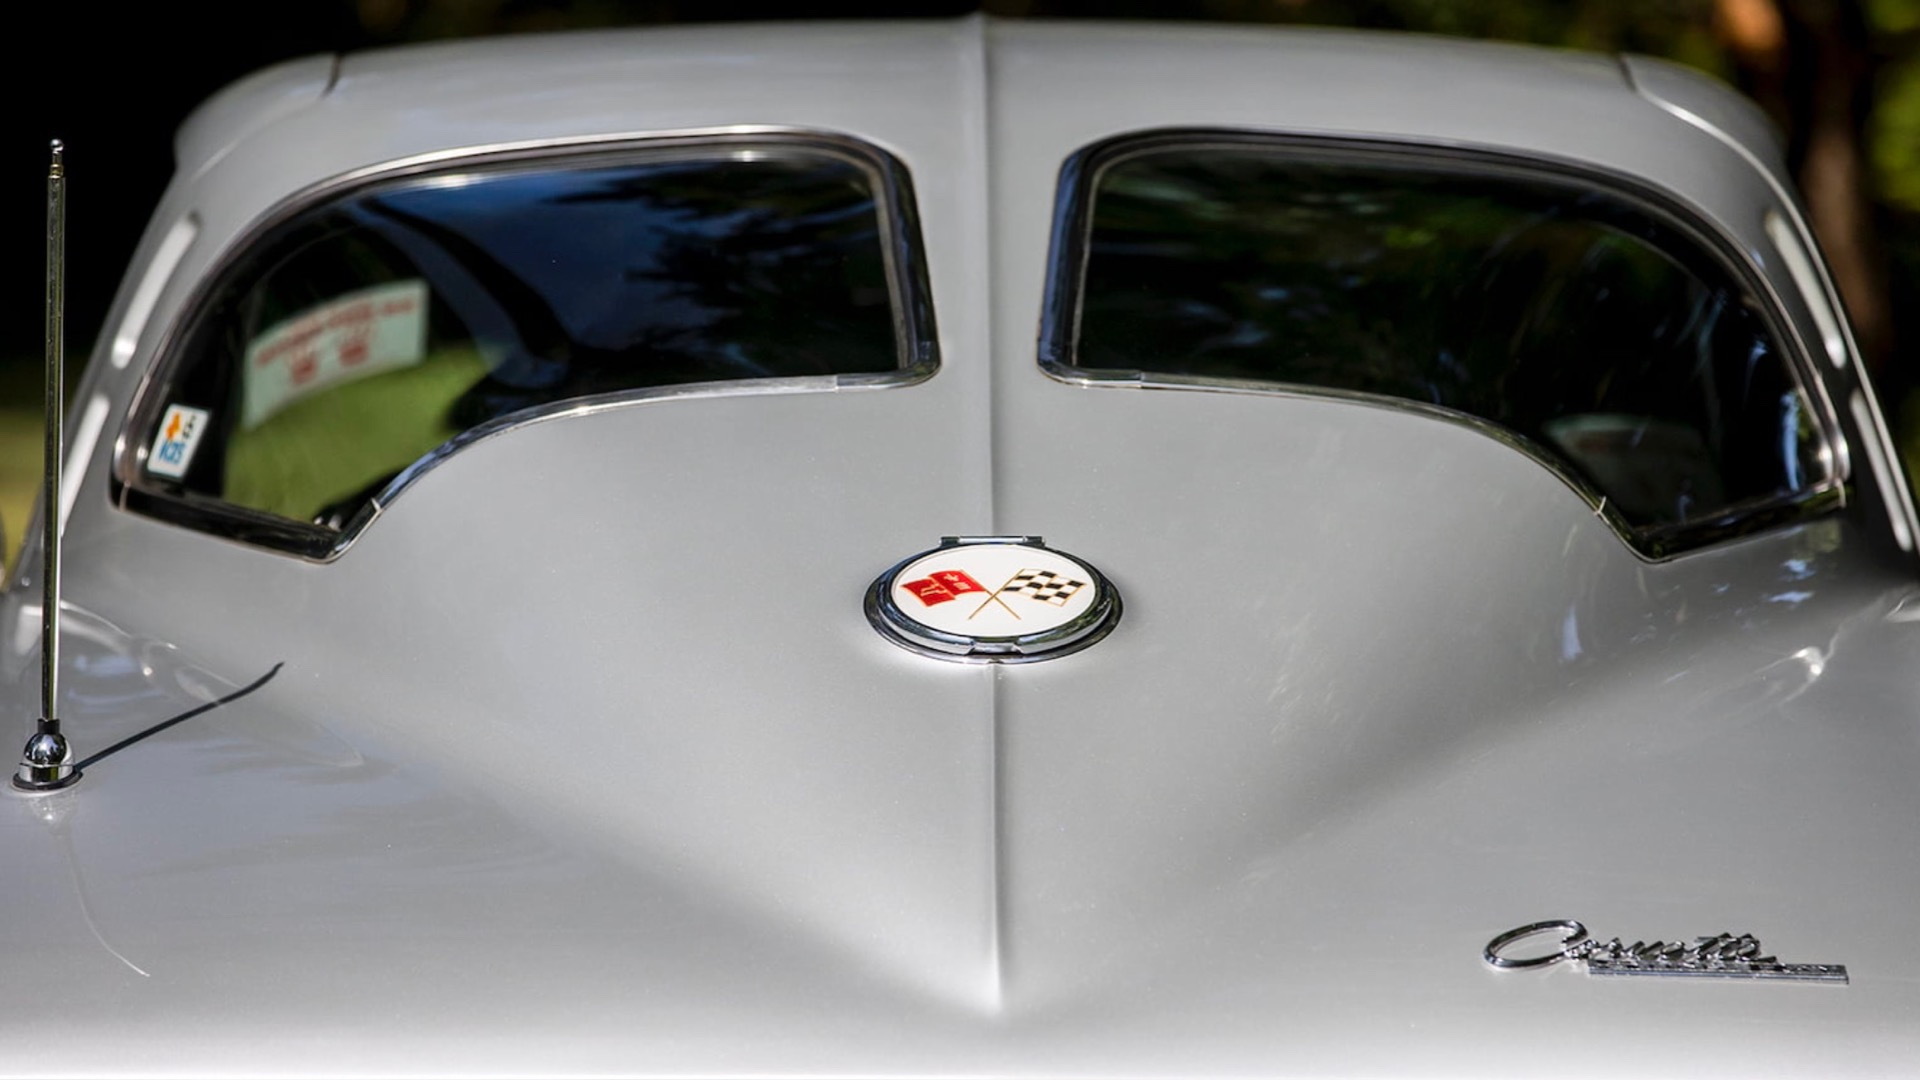 1963 Chevrolet Corvette split window coupe (photo via Mecum Auctions)